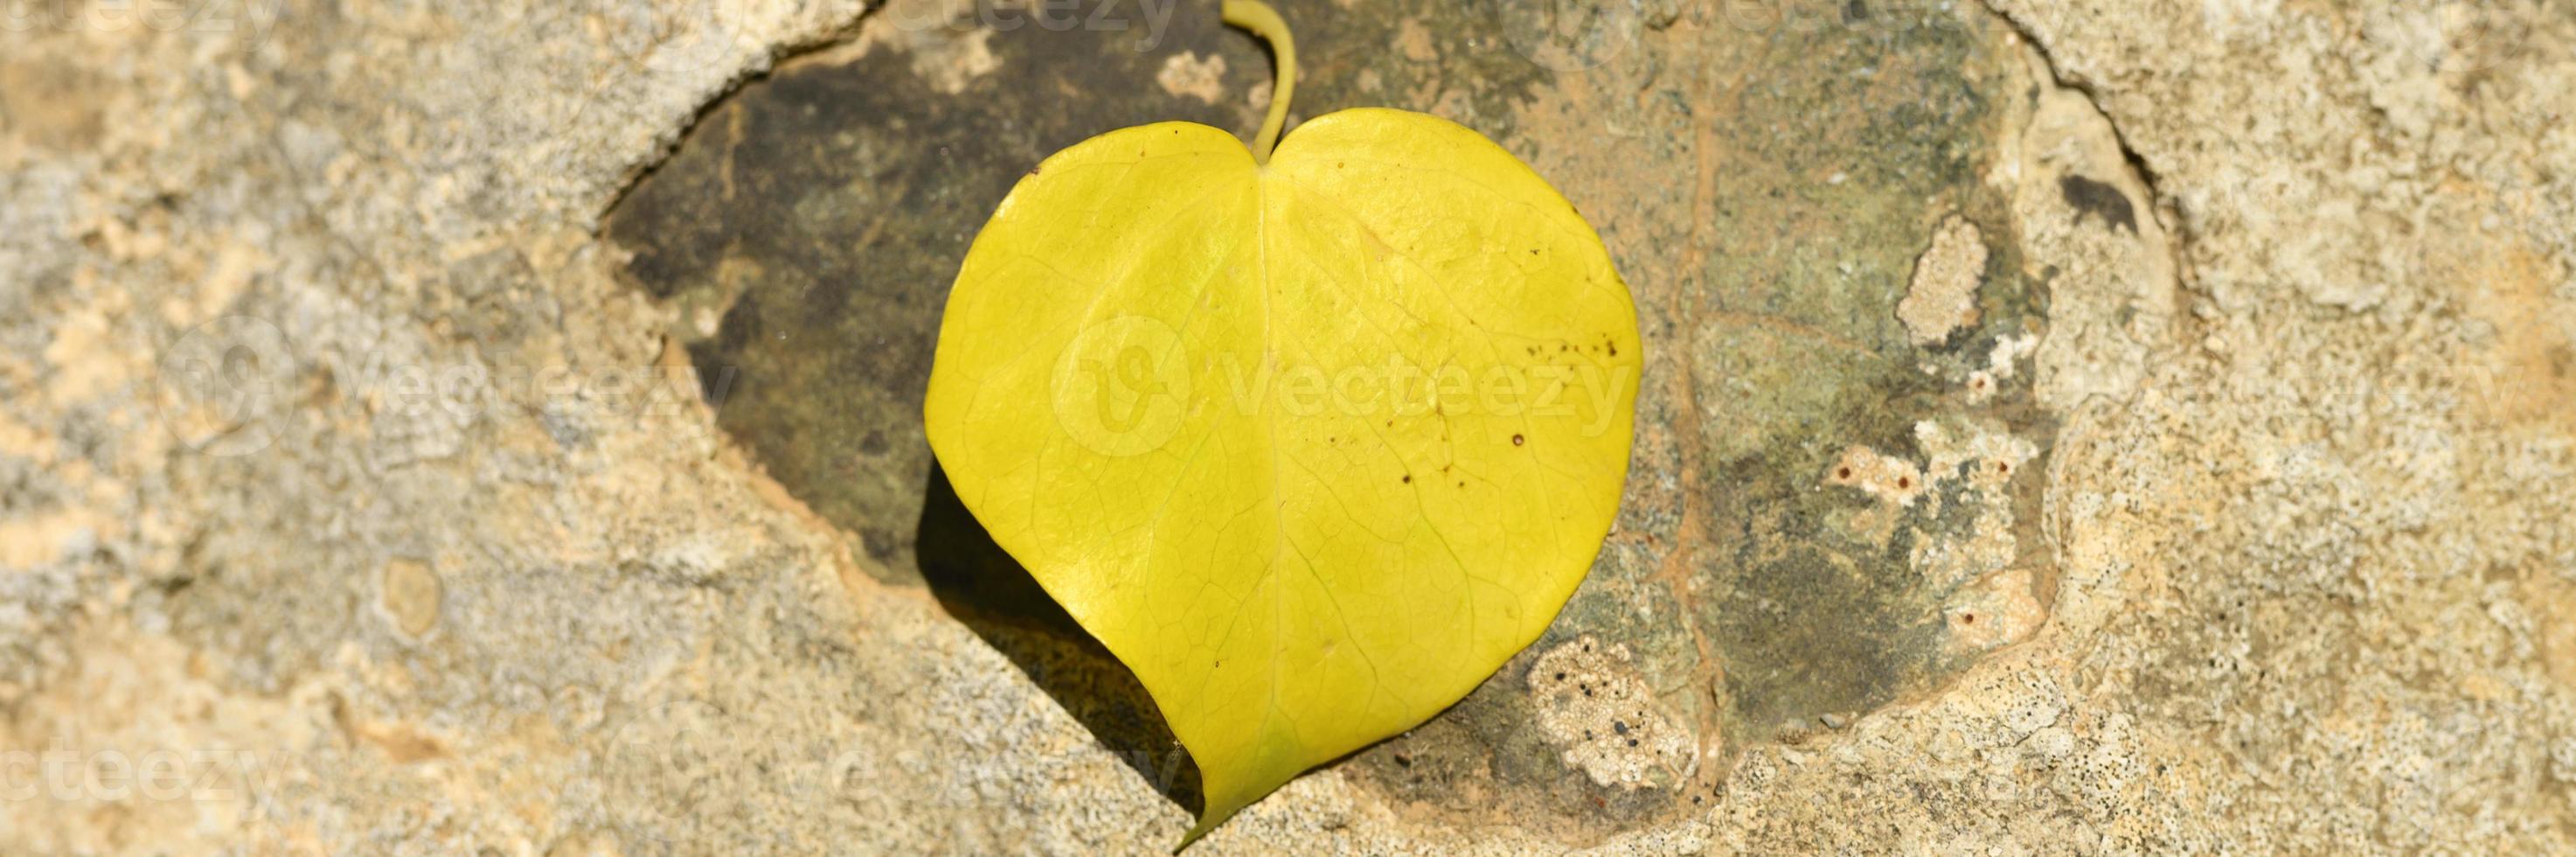 Feuille d'automne tombée jaune en forme de coeur sur une pierre photo